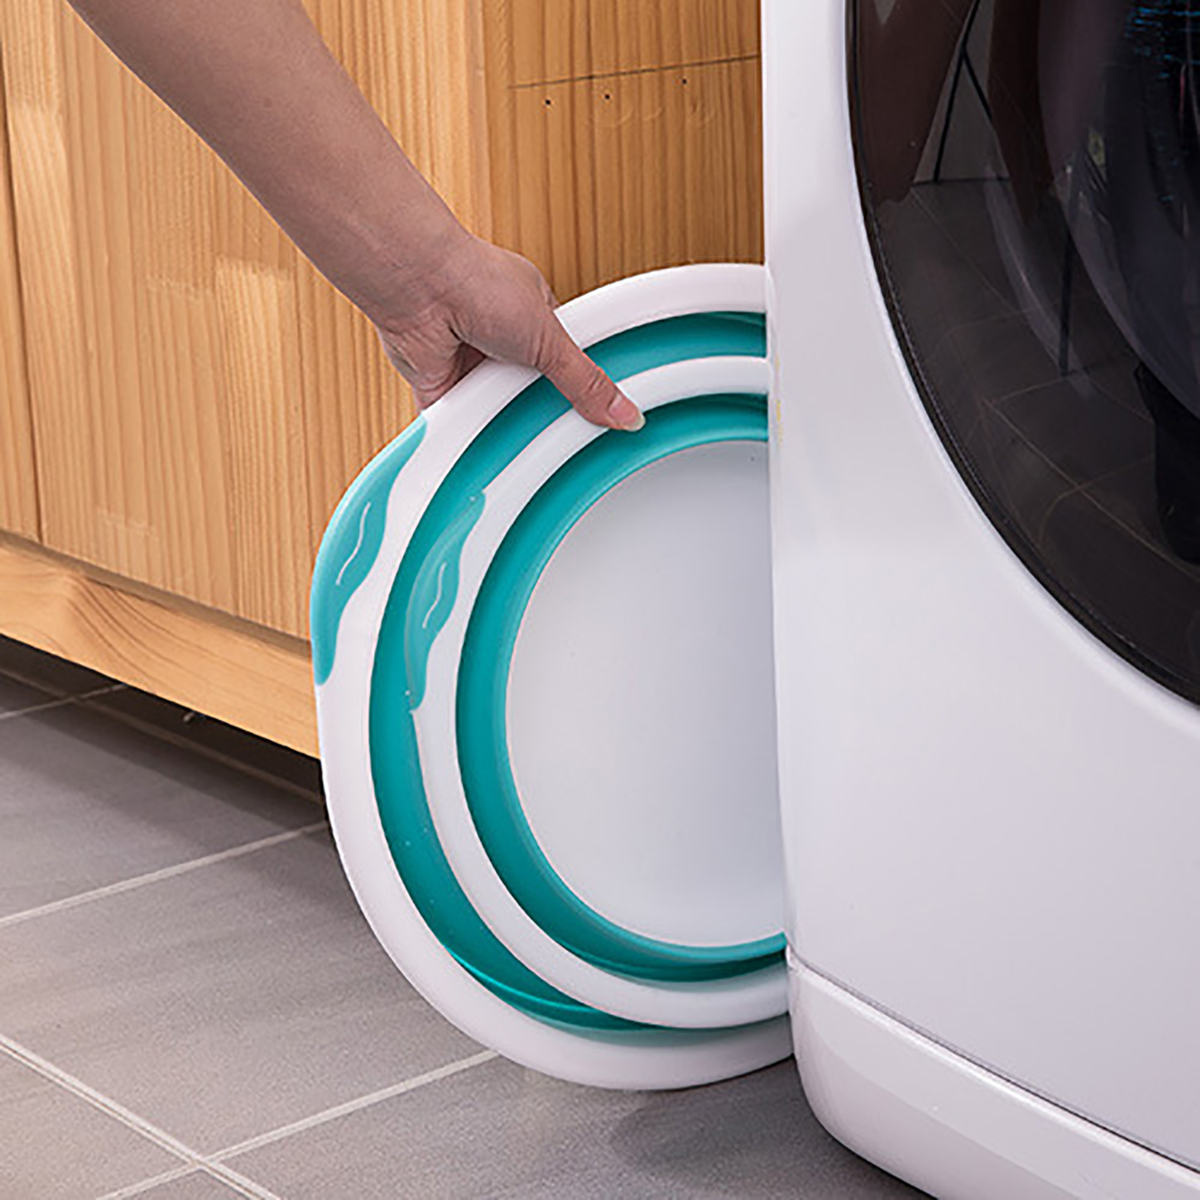 4-Size-Optional-Plastic-Foldable-Round-Dish-Tub-Portable-Hand-Feet-Washing-Basin-Space-Saving-Washtu-1748615-4